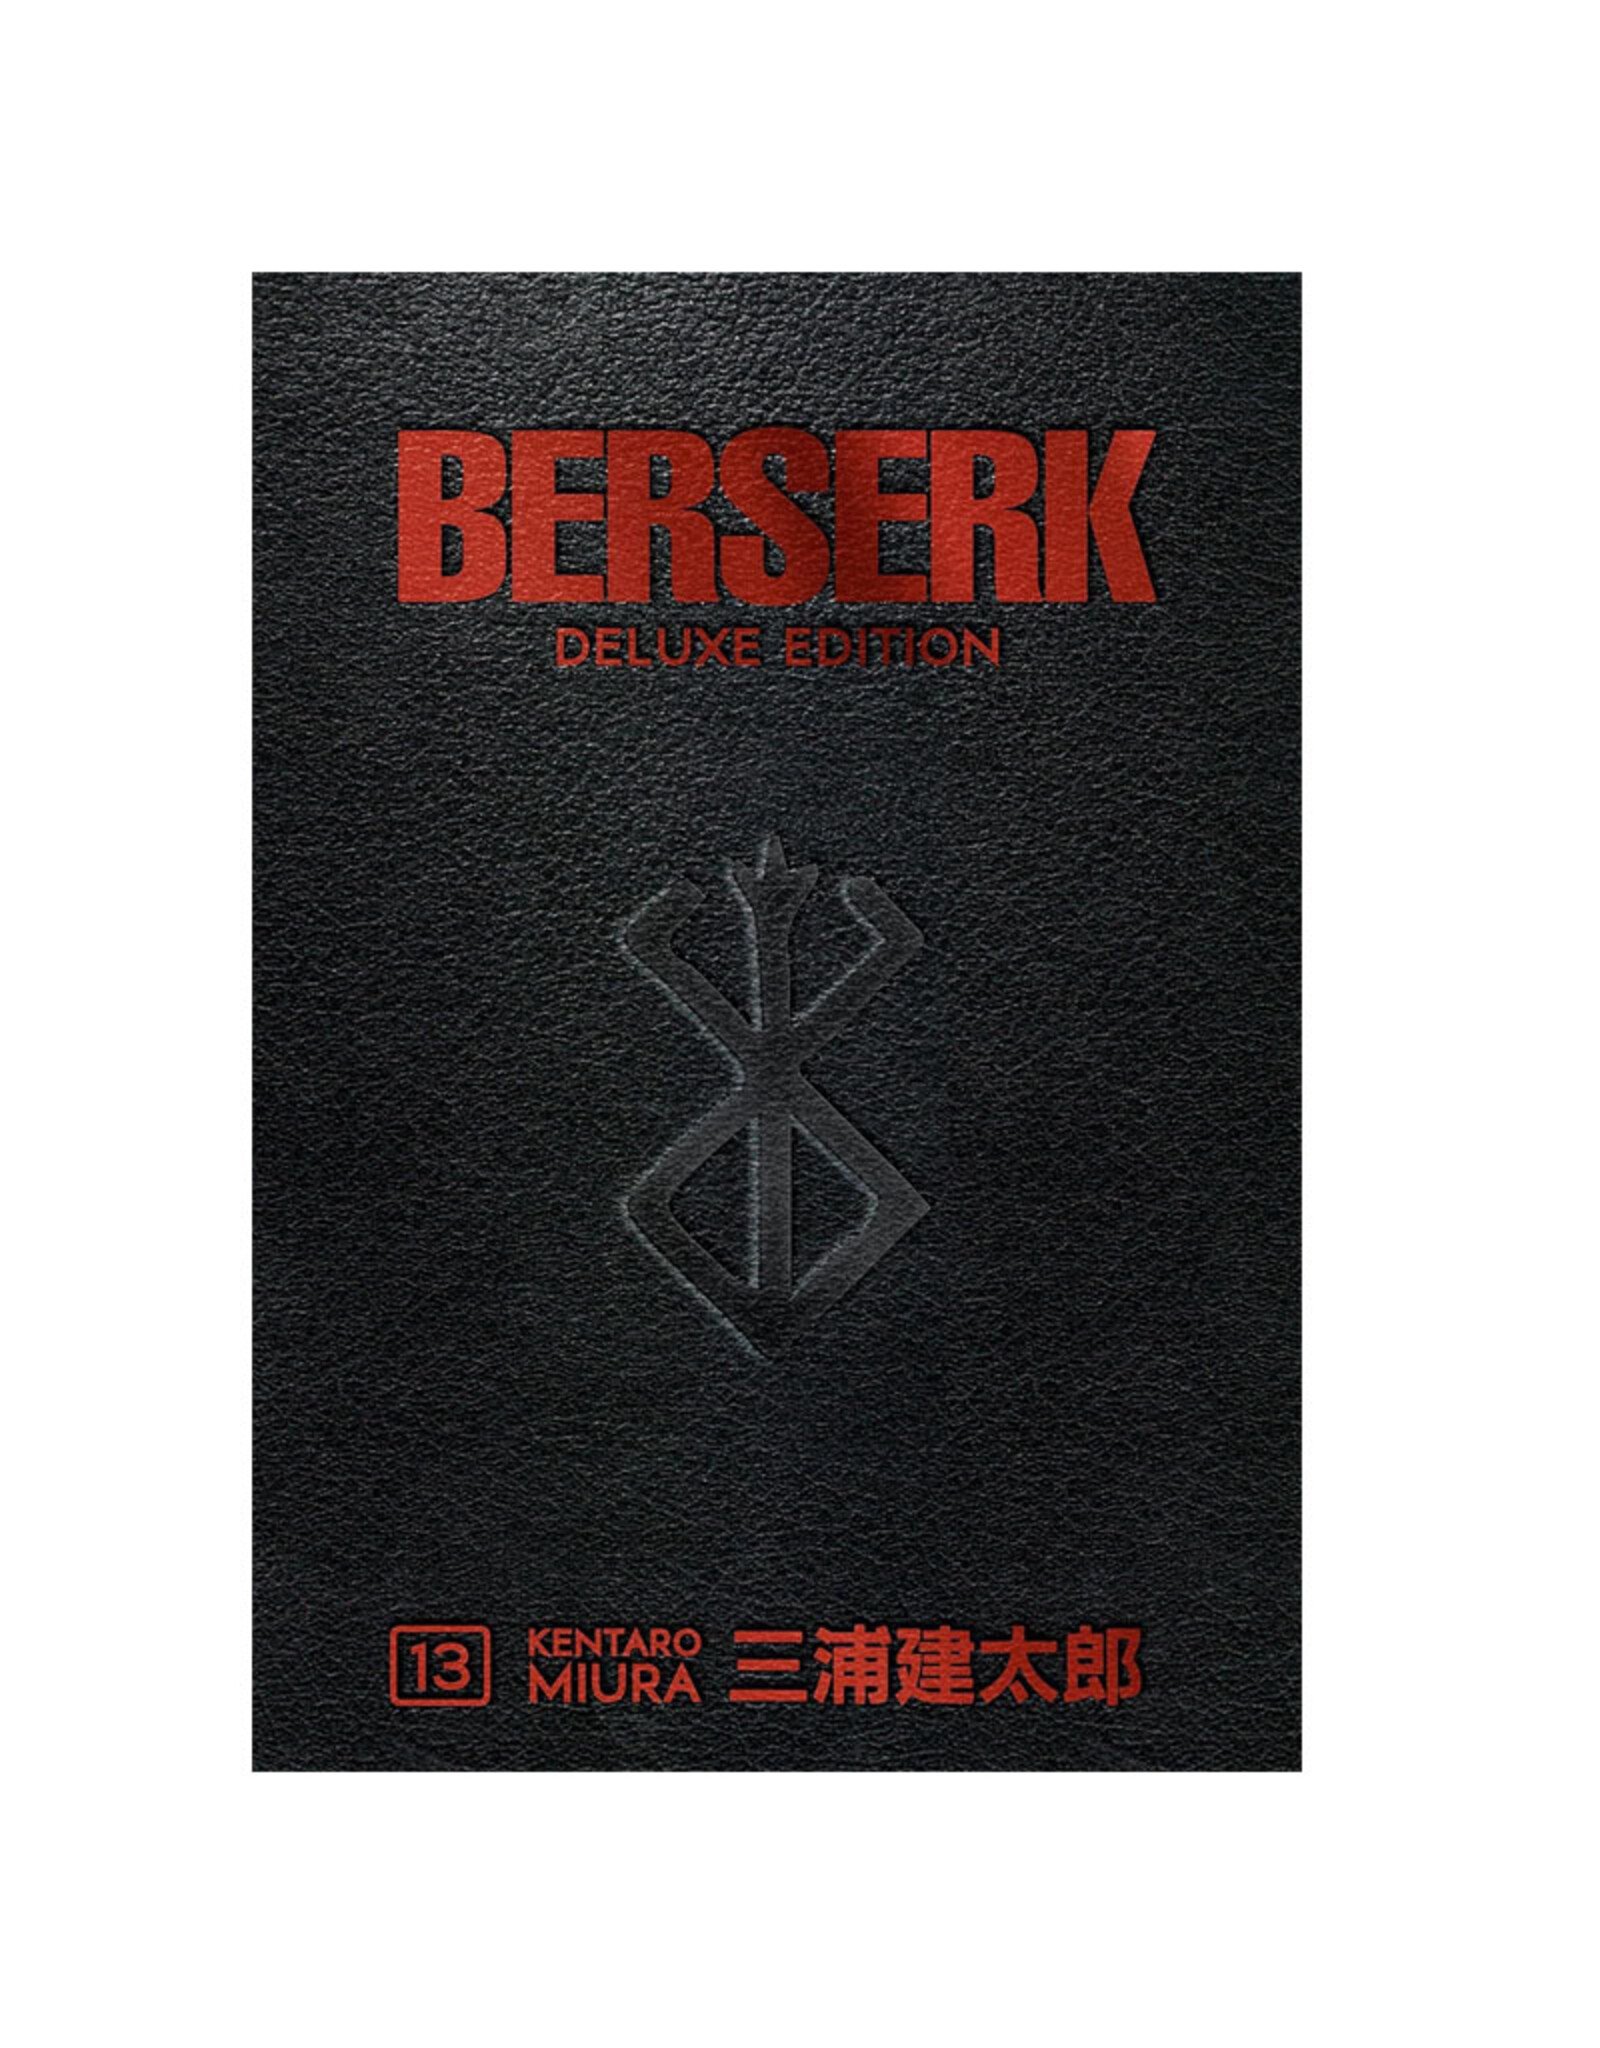 Dark Horse Comics Berserk Deluxe Edition Hardcover Volume 13